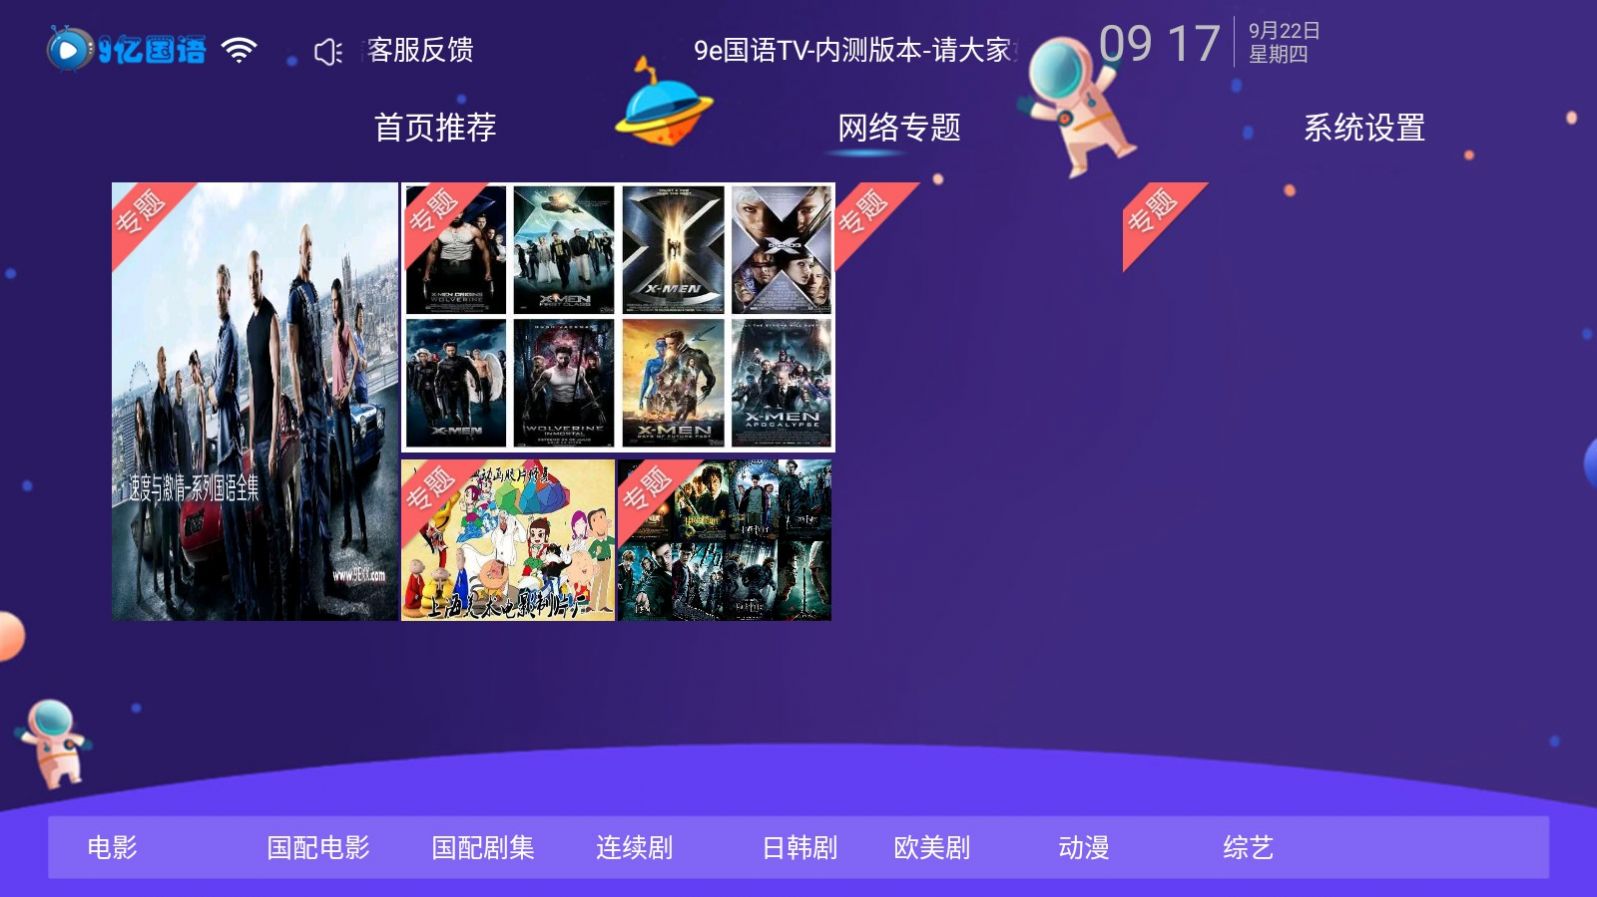 9e国语TV影视app最新版图片1